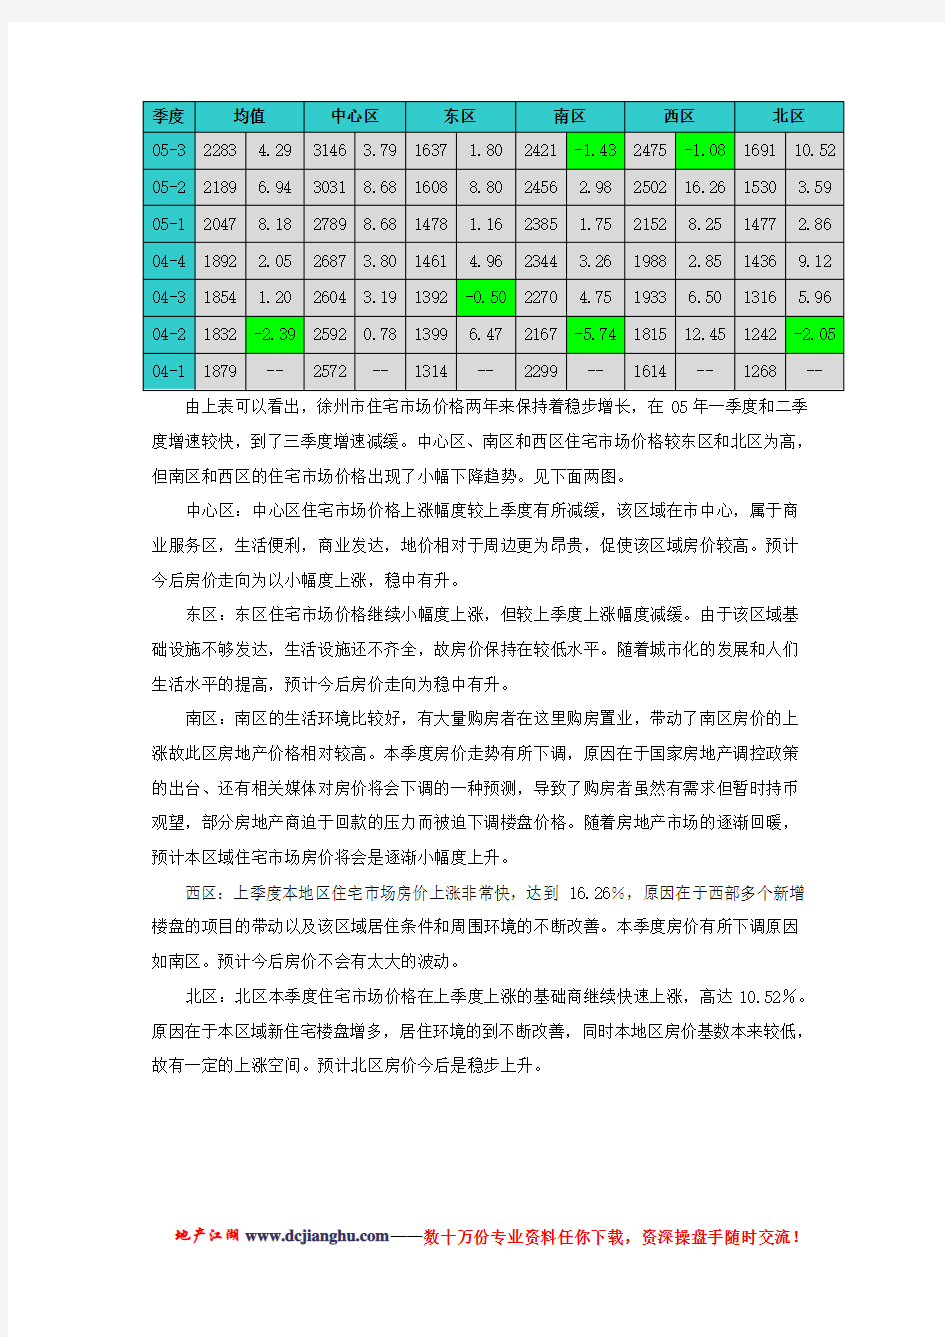 _徐州市房地产市场调研报告(全版)